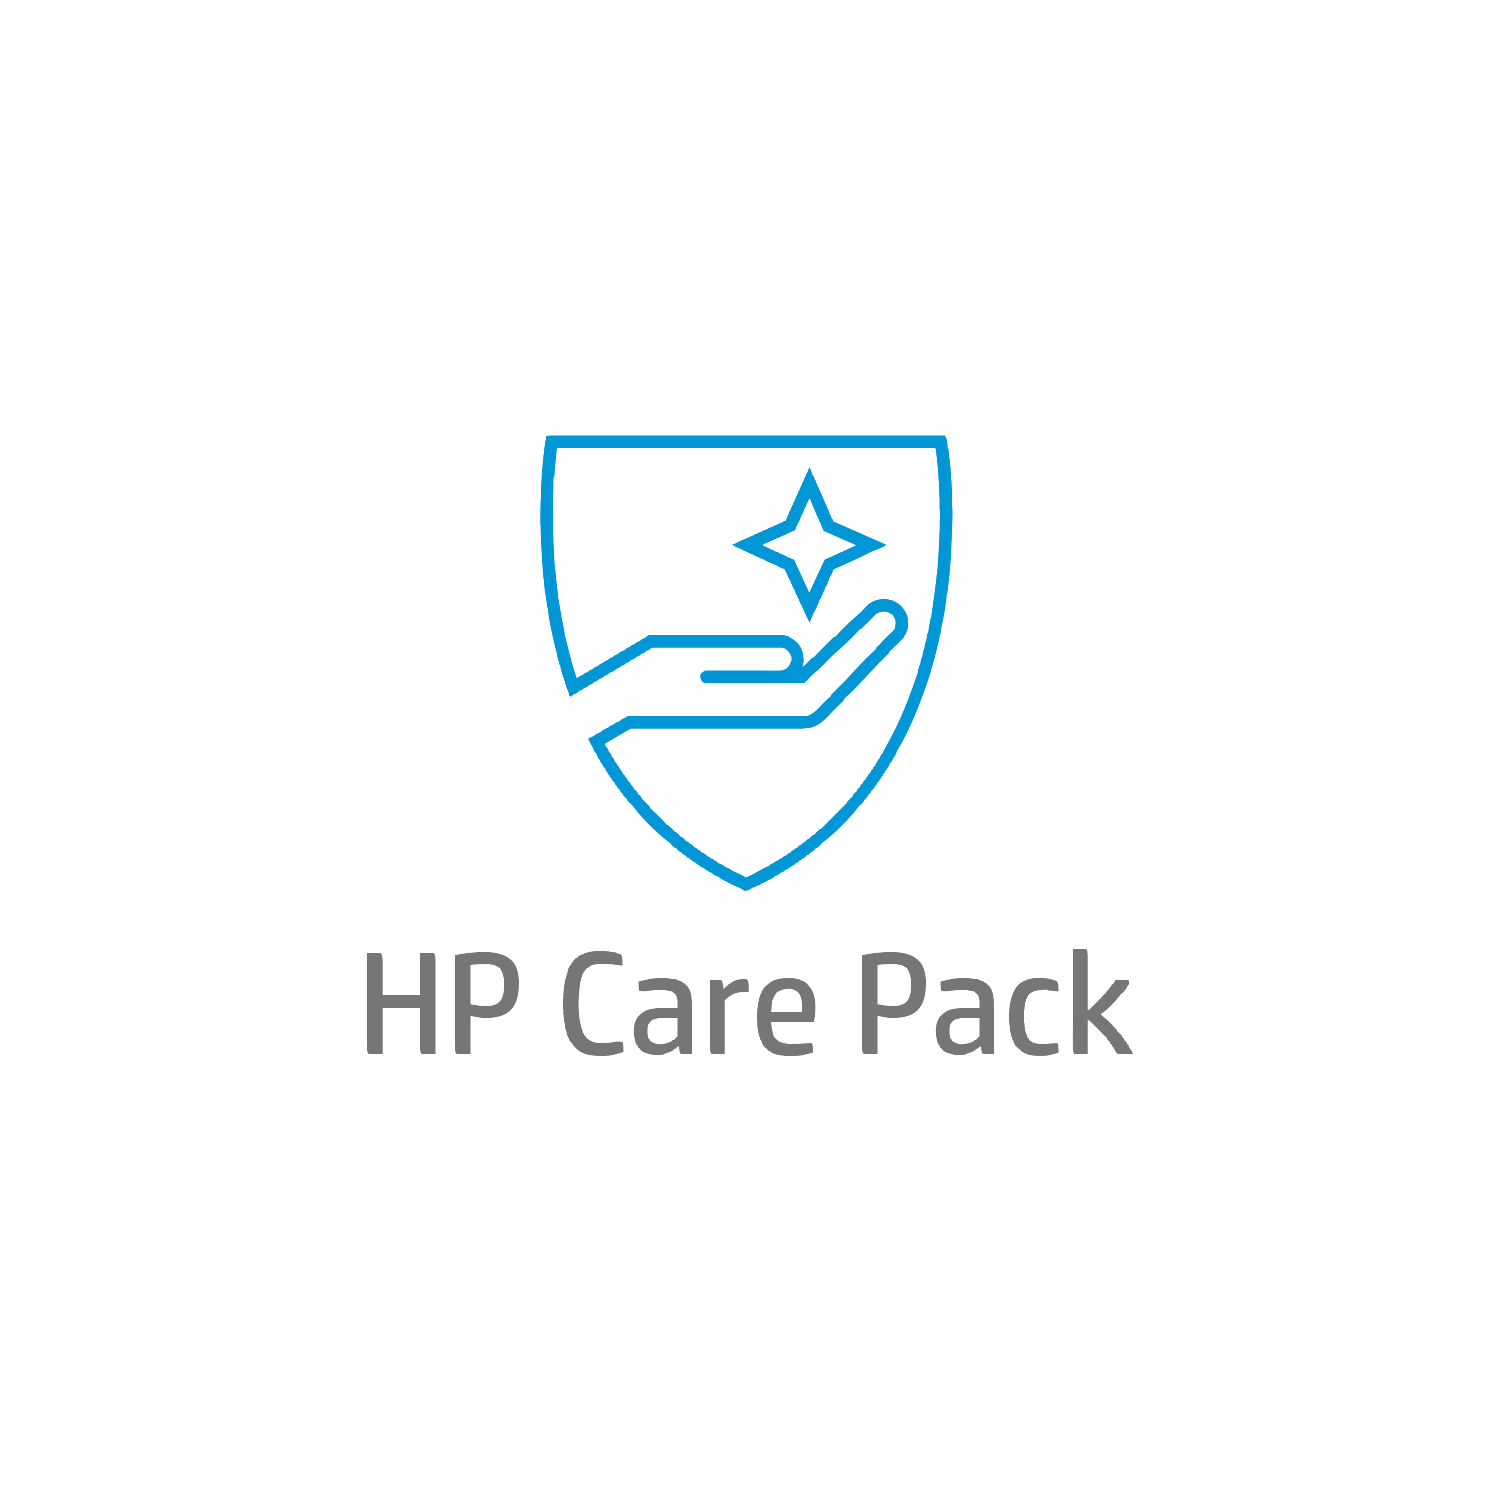 Bild von HP Care 4 Jahre Solution-Support für Mobile Workstations - Externe Reparatur - Außerhalb des Kundenstandorts - Unter Garantie - Standardarbeitstage - 9 Stunden - 4 Jahre - Reparatur innerhalb von 3–7 Werktagen